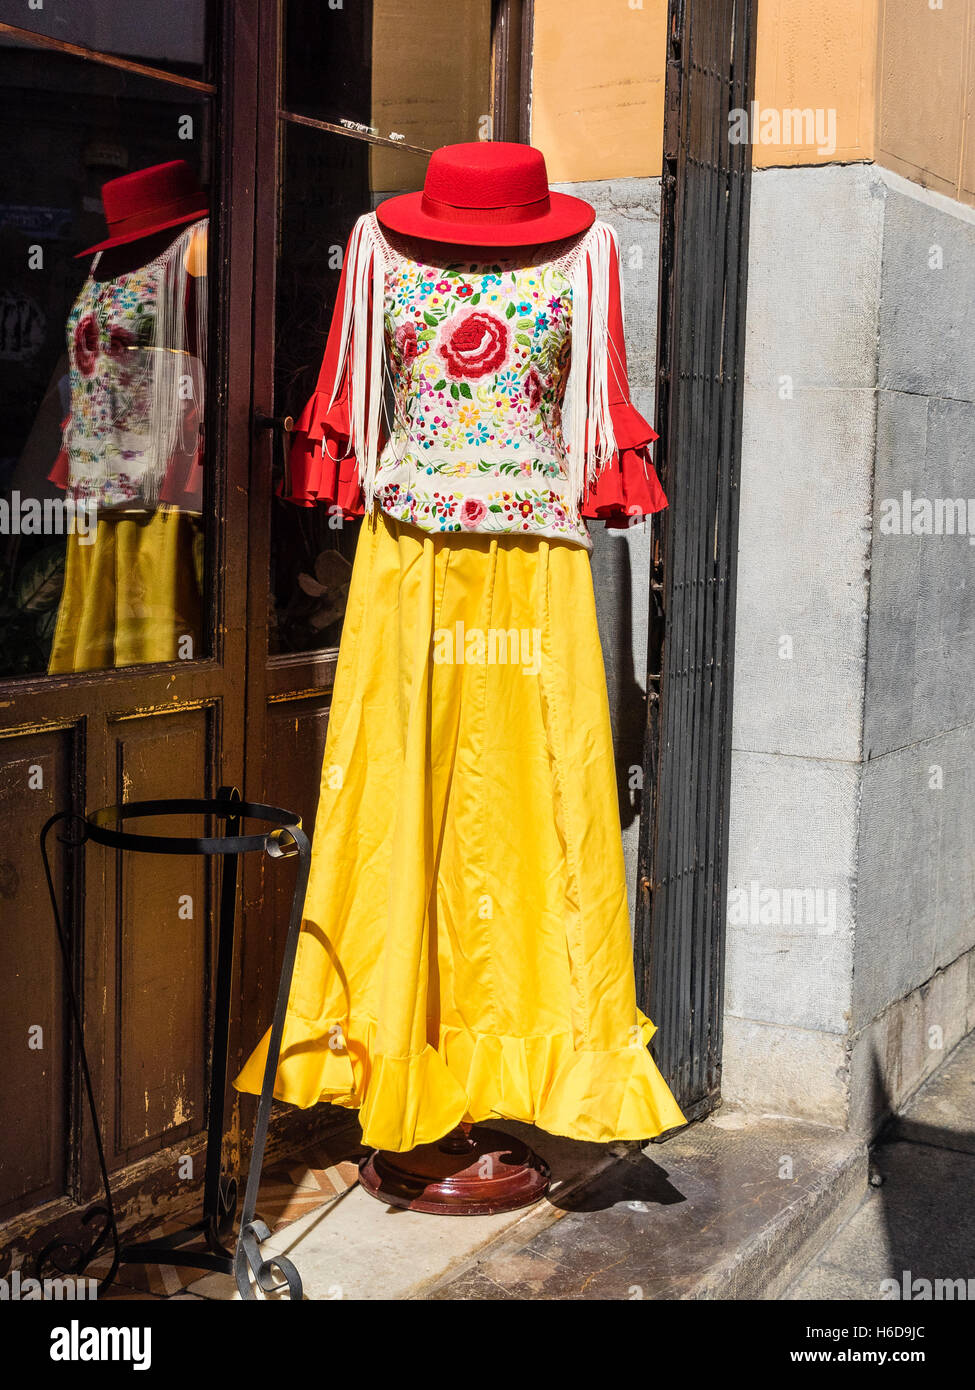 Manichino donna Siviglia, Spagna vestito per una fiesta con un Red Hat, luminoso giallo gonna e camicia ricamata. Foto Stock